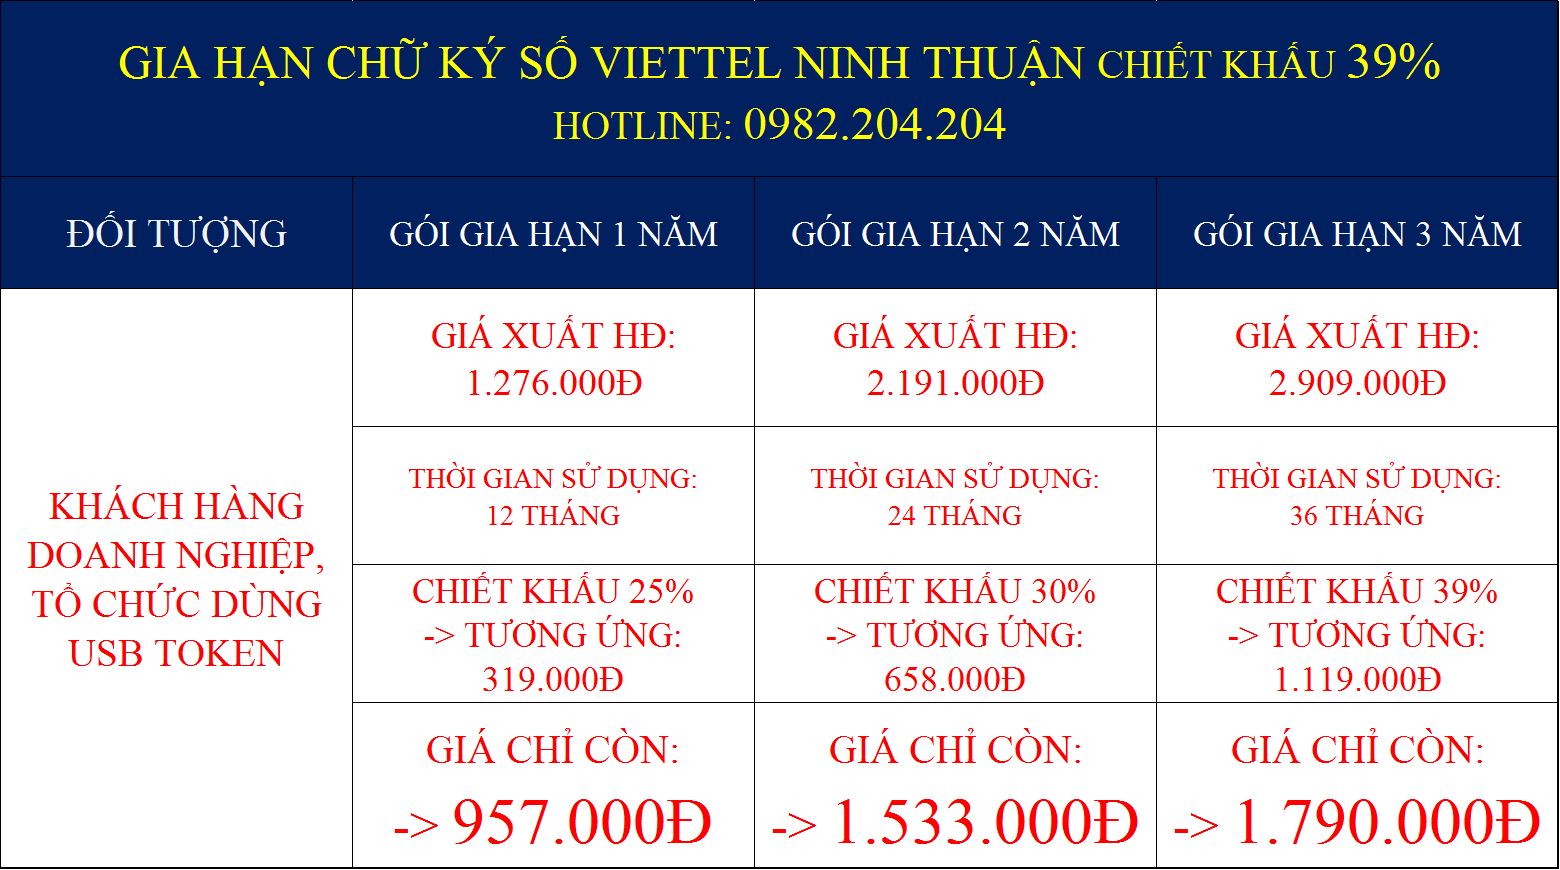 Gia hạn chữ ký số Viettel tại Ninh Thuận